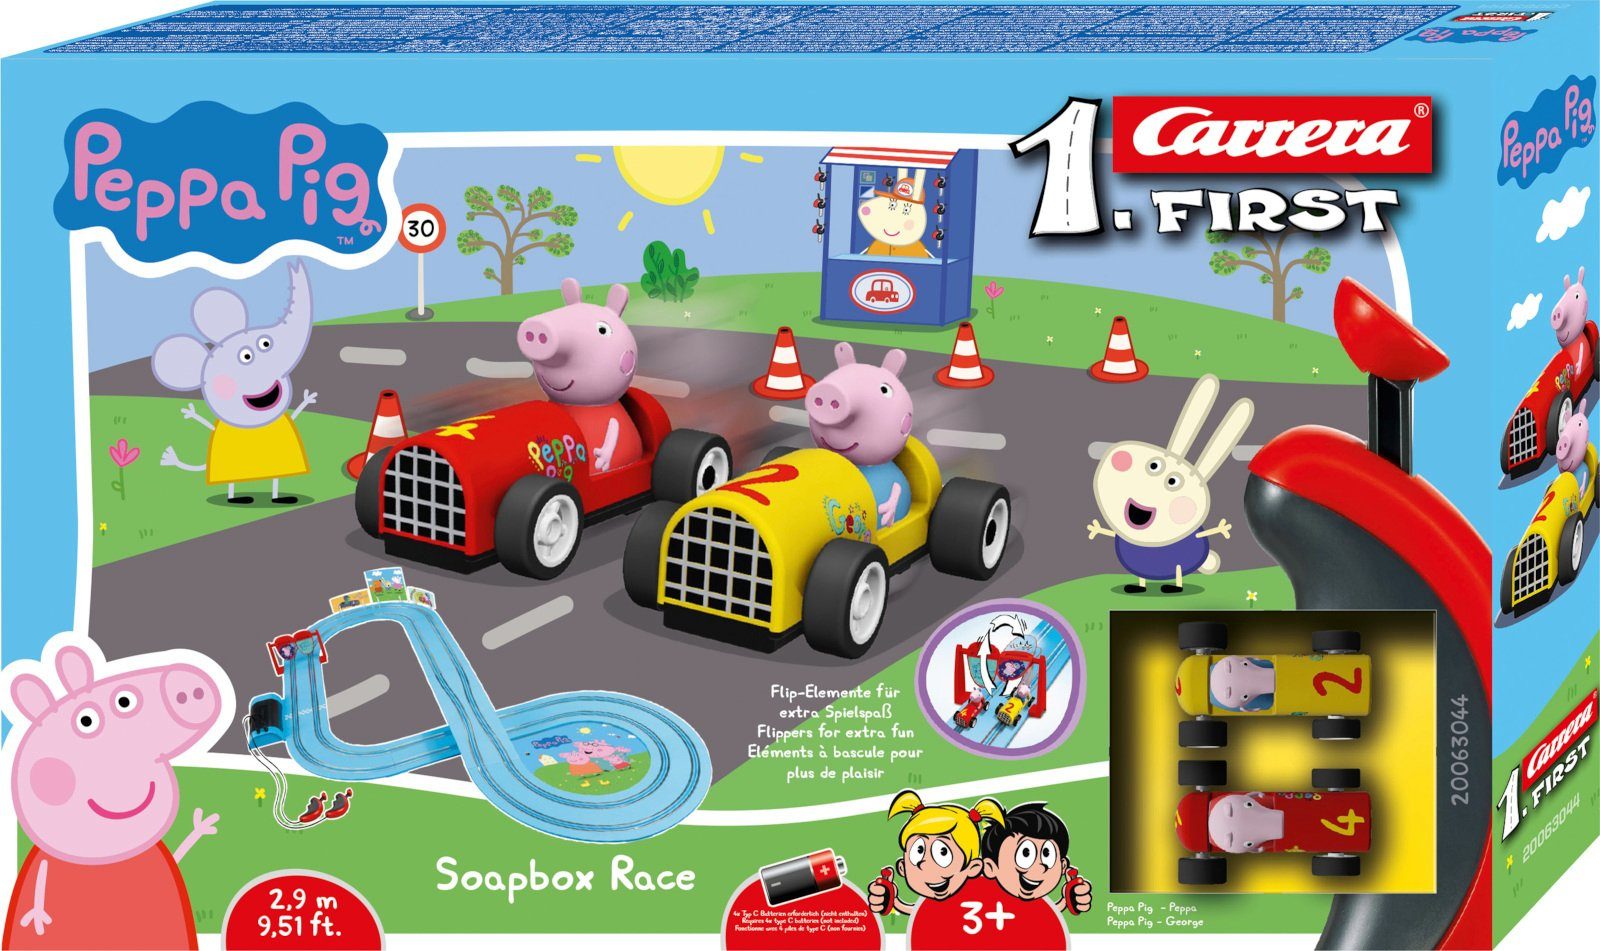 Carrera® Autorennbahn FIRST Rennbahn Peppa 3 m), (Set), Jahren Spielzeugautos ab 2 Pig 2.9 (Streckenlänge Race Komplettset inkl. Soapbox